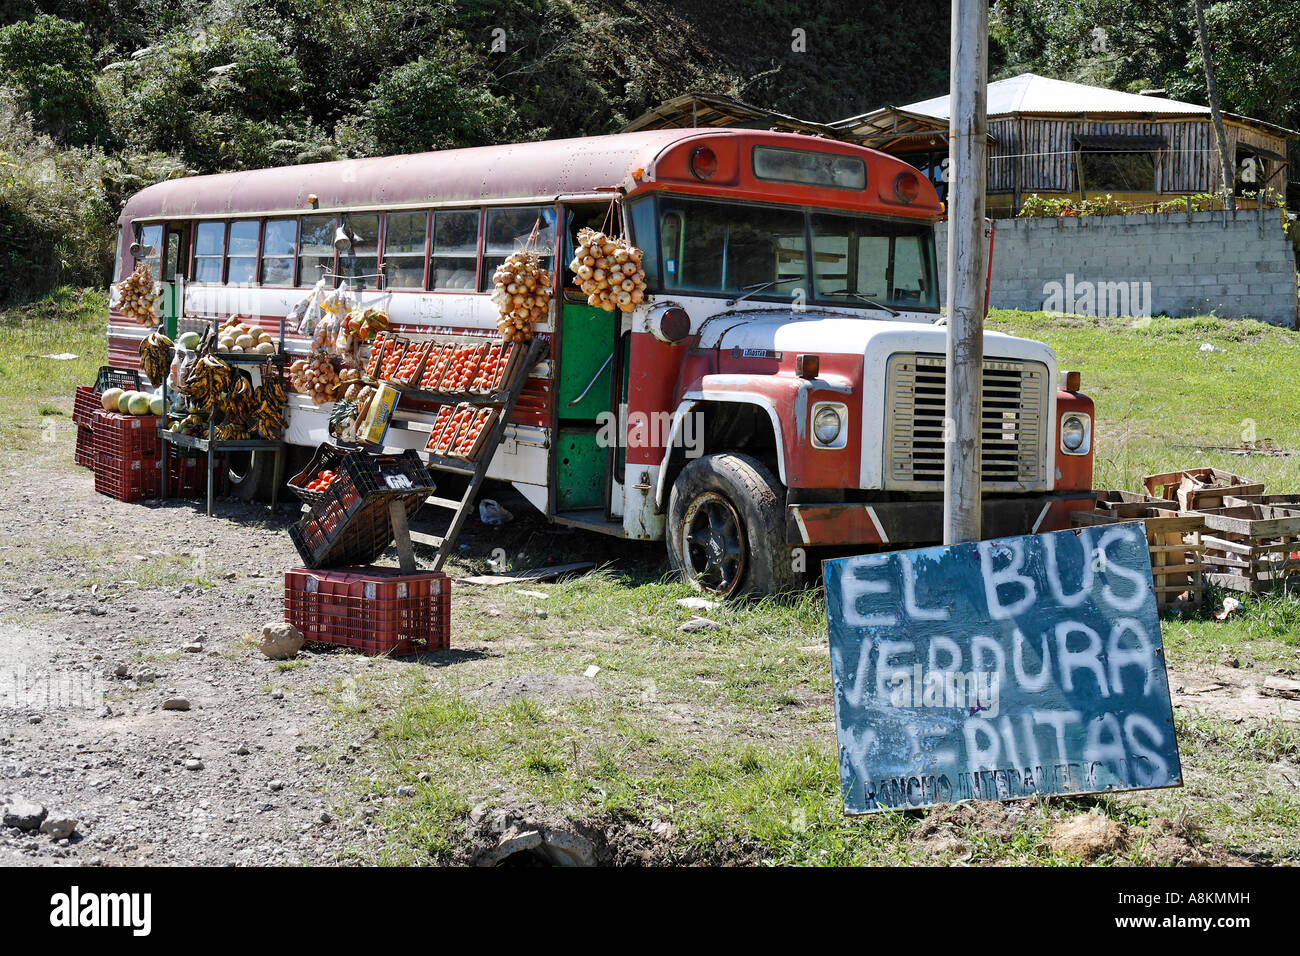 Sale of fruits and vegetables in old bus, "El Bus Verdura y Frutas", Costa Rica Stock Photo